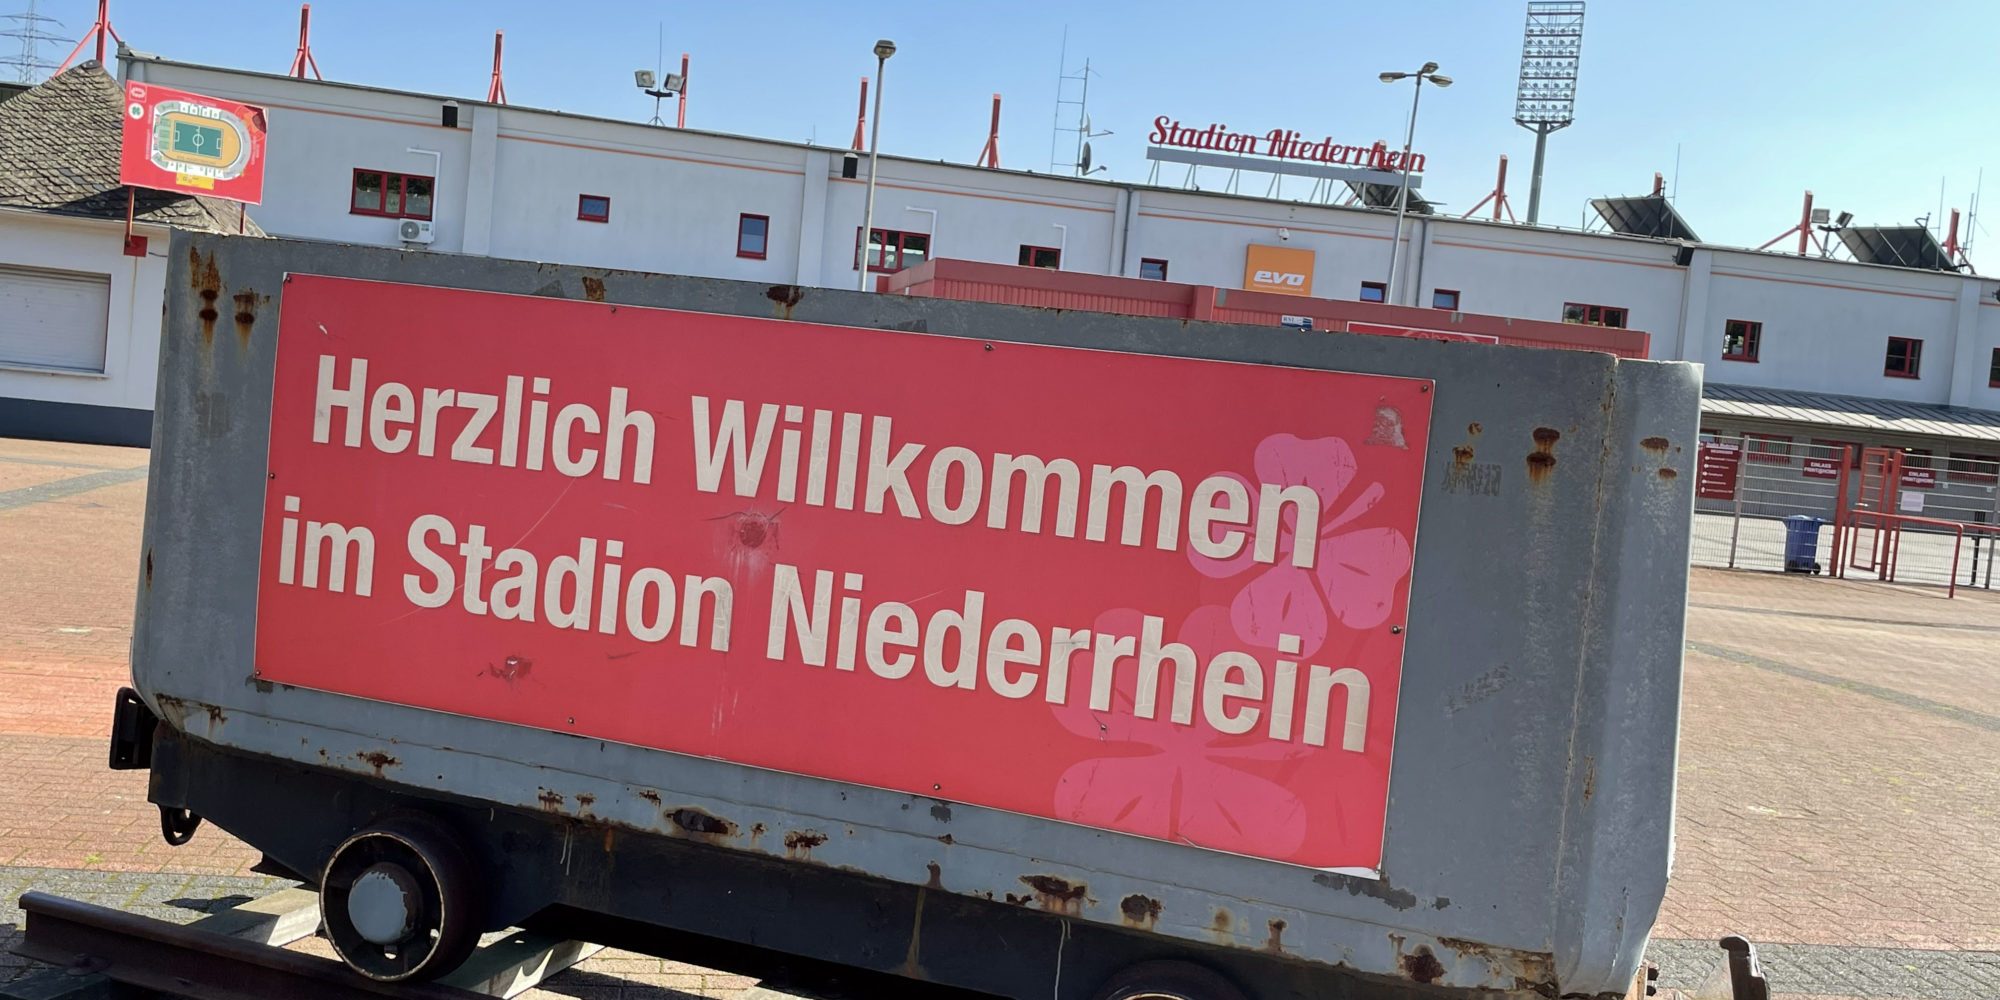 De foto toont een mijnwagen voor het Niederrhein-stadion in Oberhausen